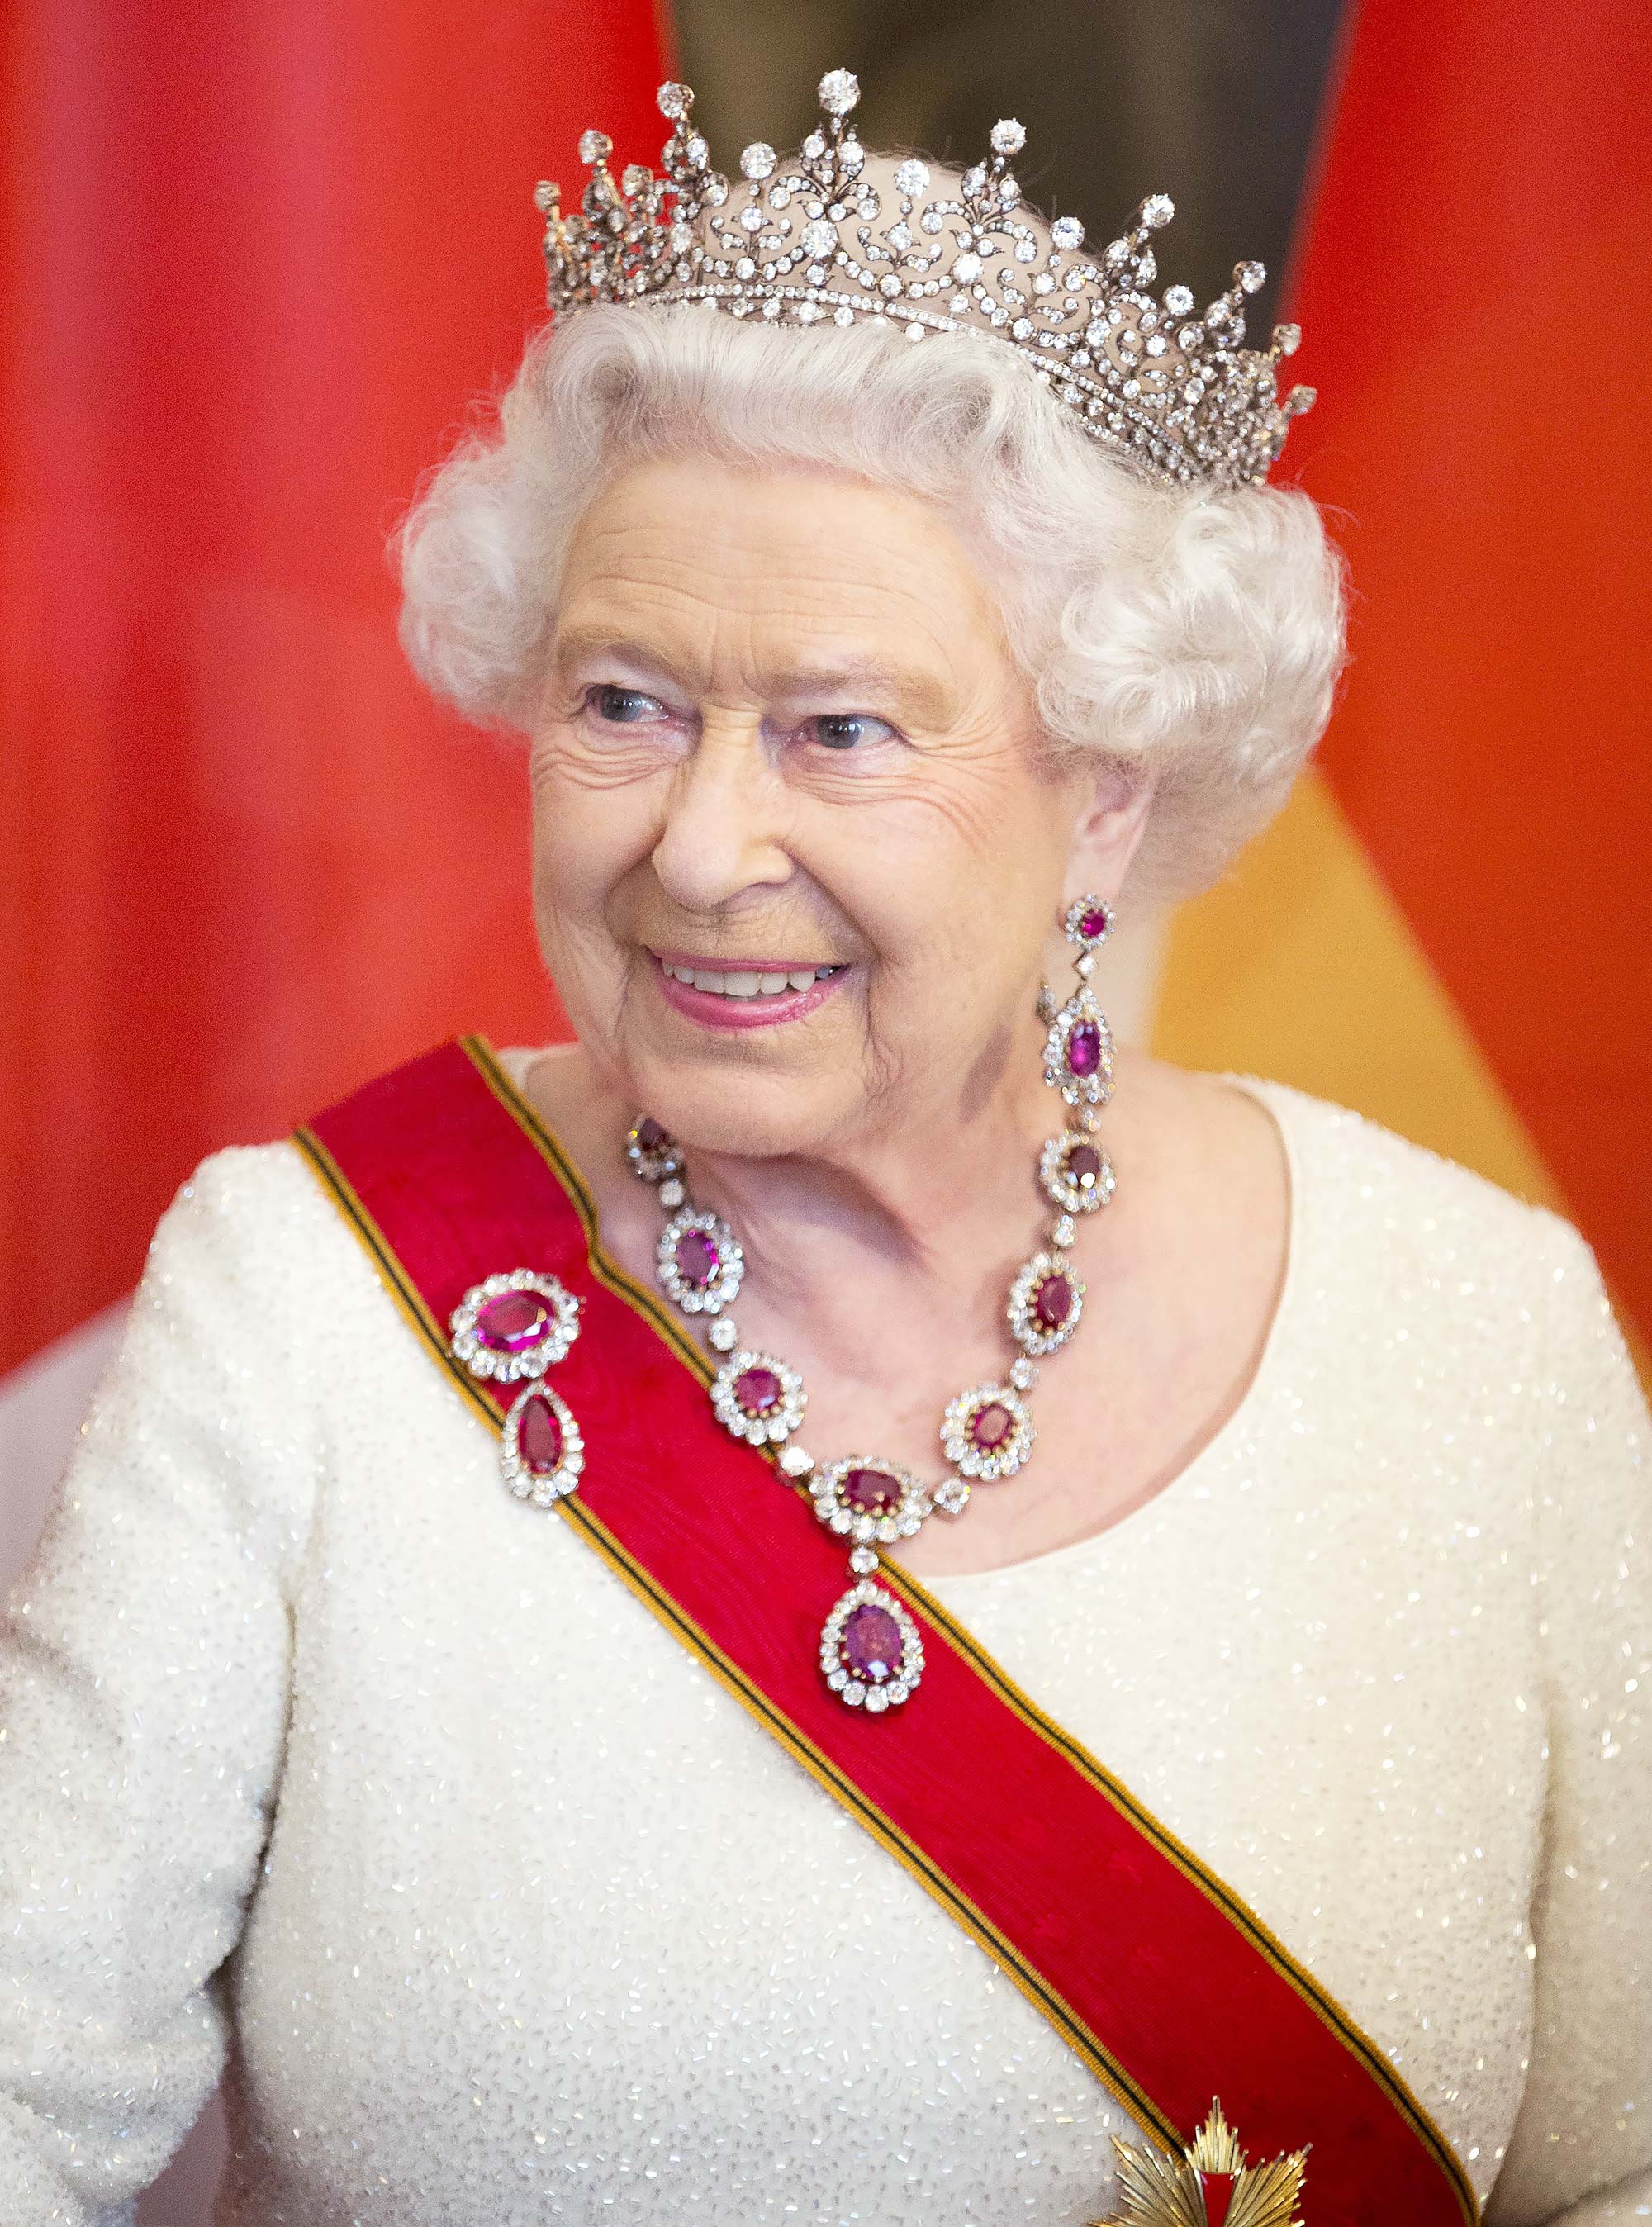 acceptabel fangst handicappet How Queen Elizabeth II Has Lent Her Tiaras to Family Members